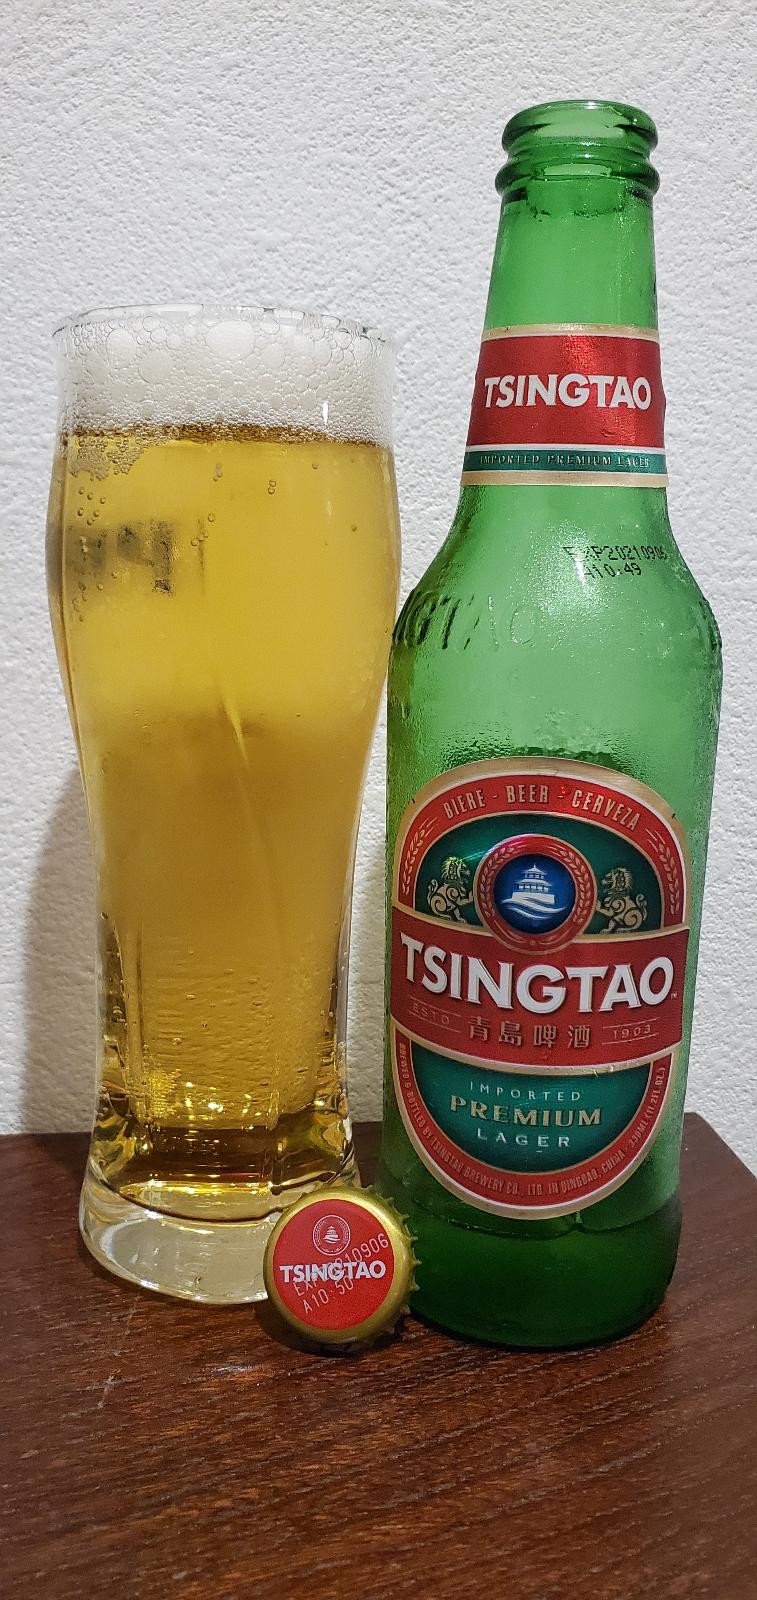 Tsingtao Premium